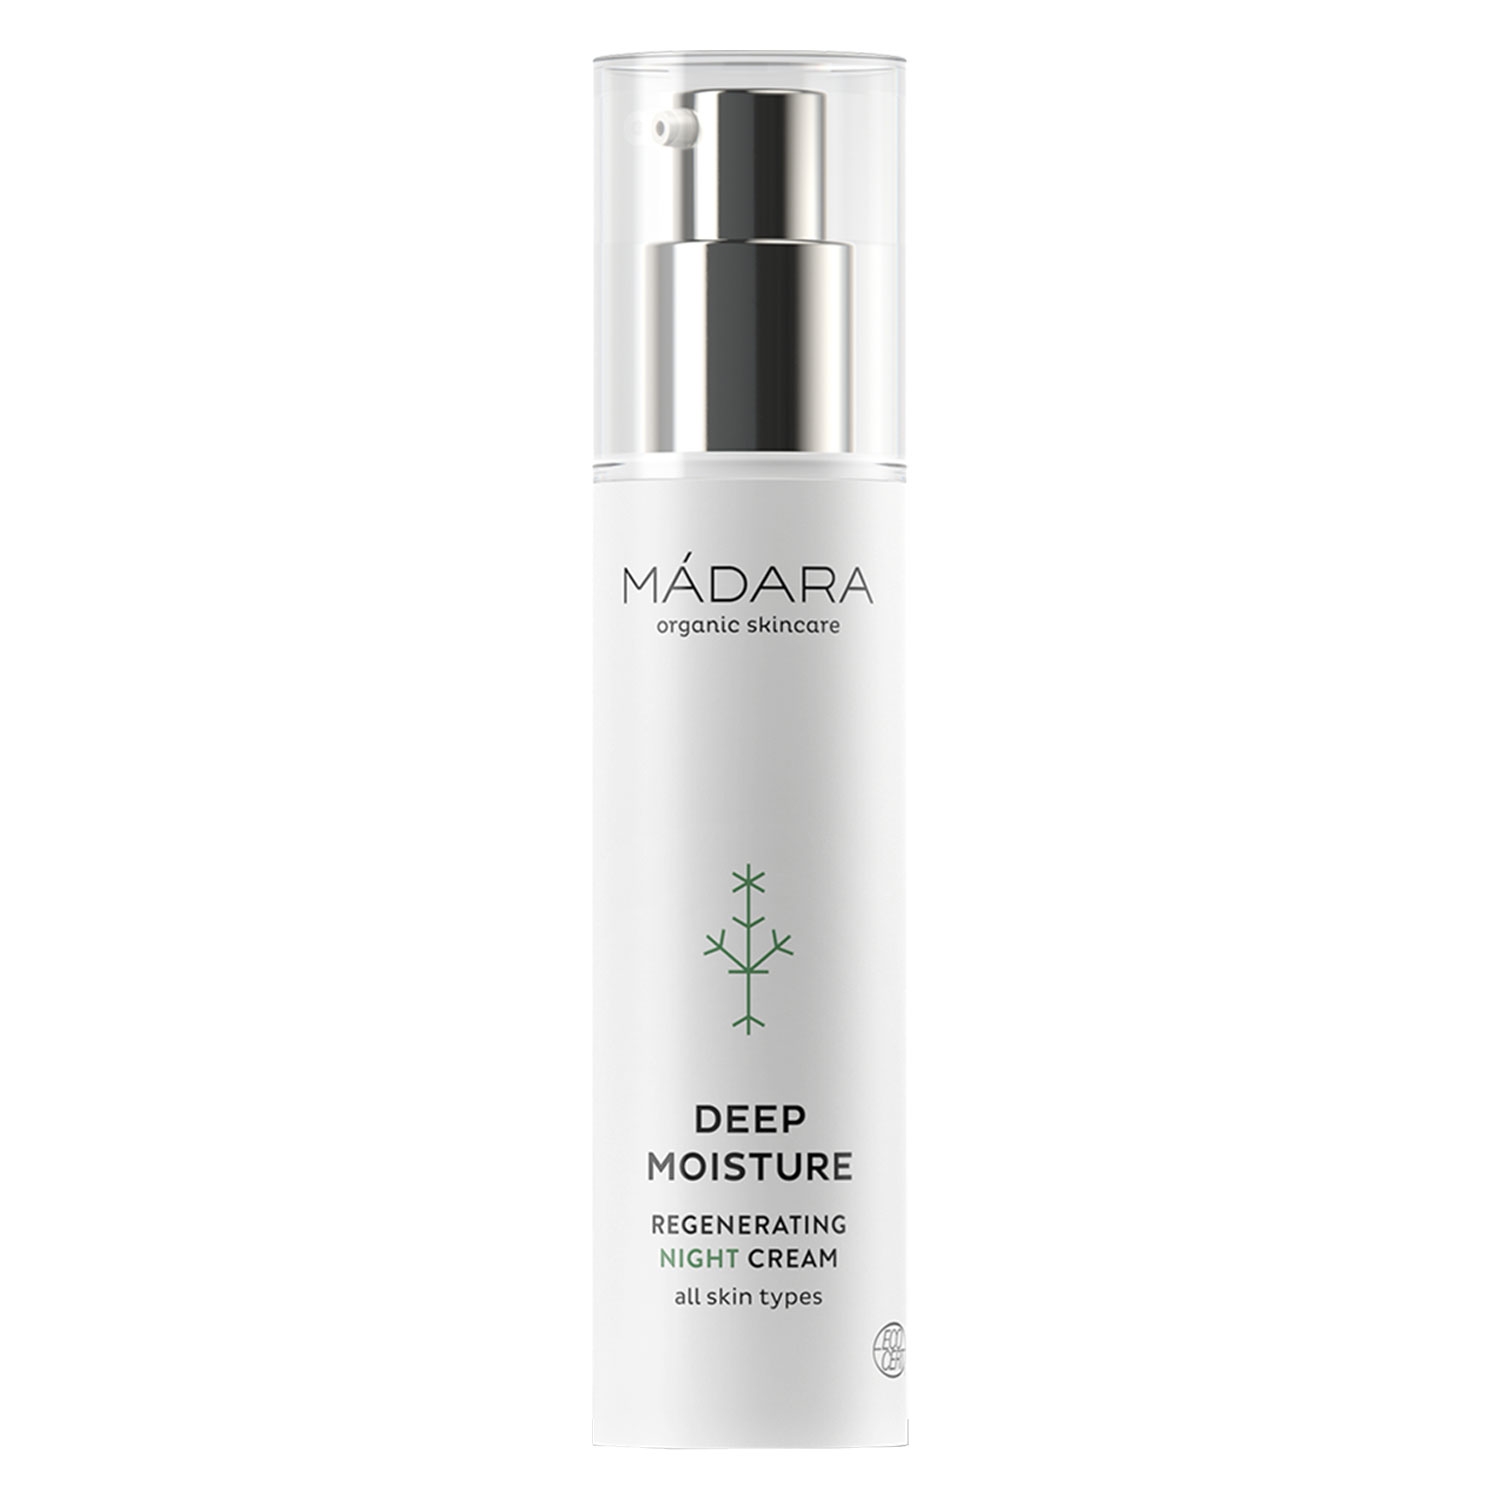 Produktbild von MÁDARA Care - Deep Moisture Regenerating Night Cream